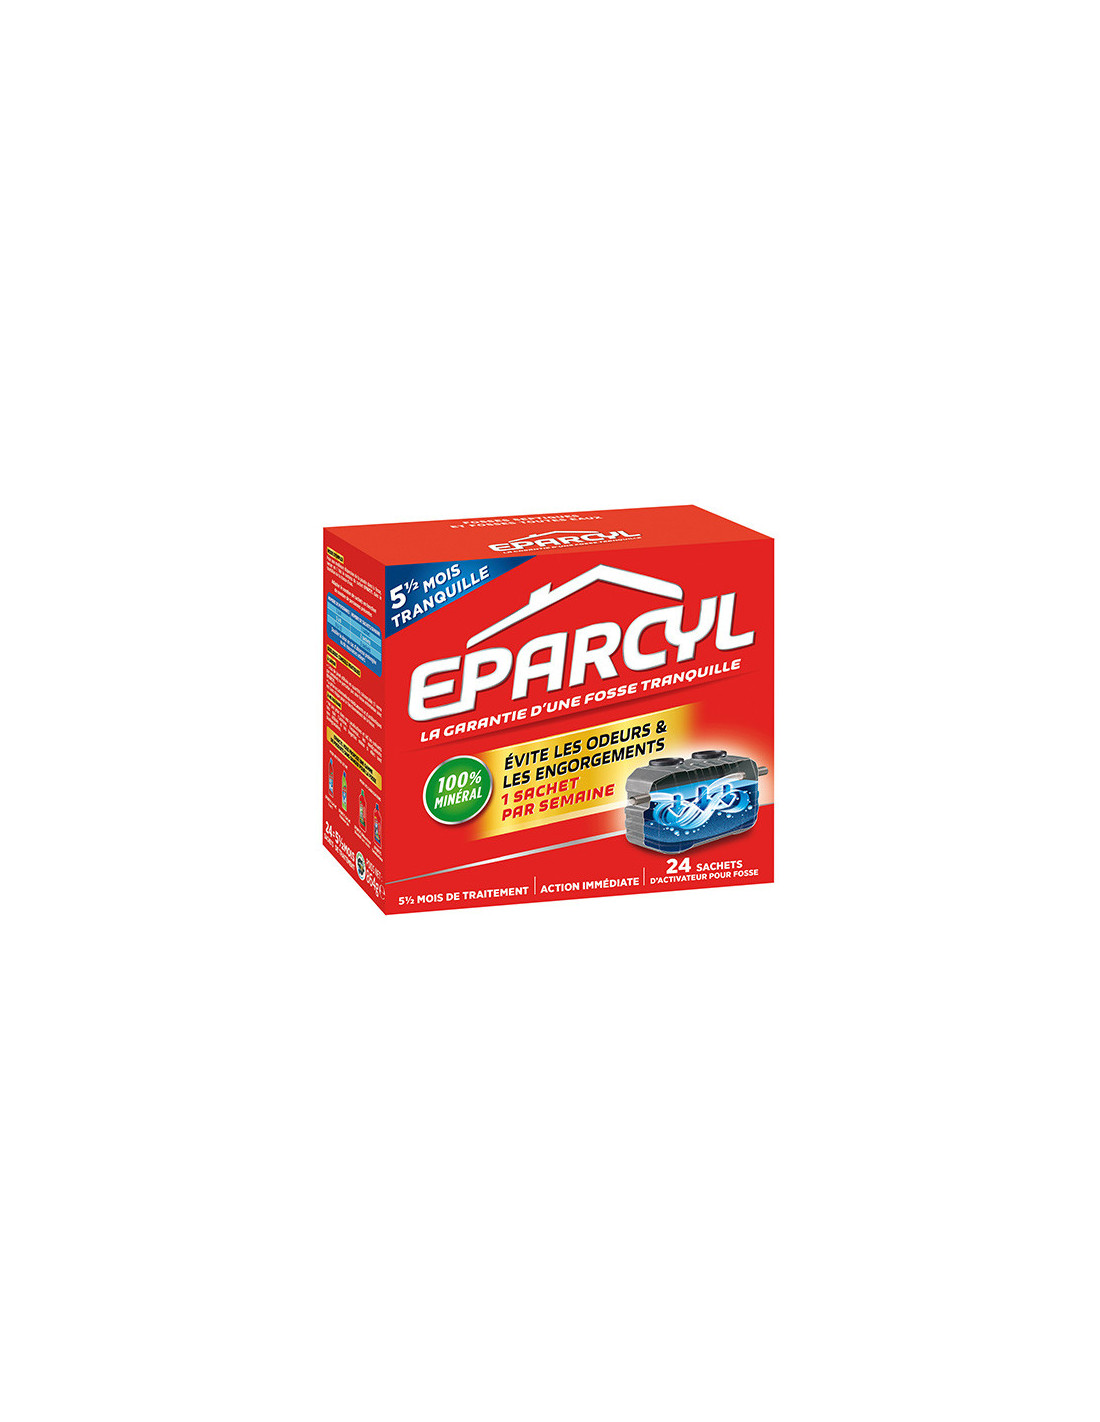 Eparcyl – 54 Sachets (12 mois de traitement) Activateur Biologique